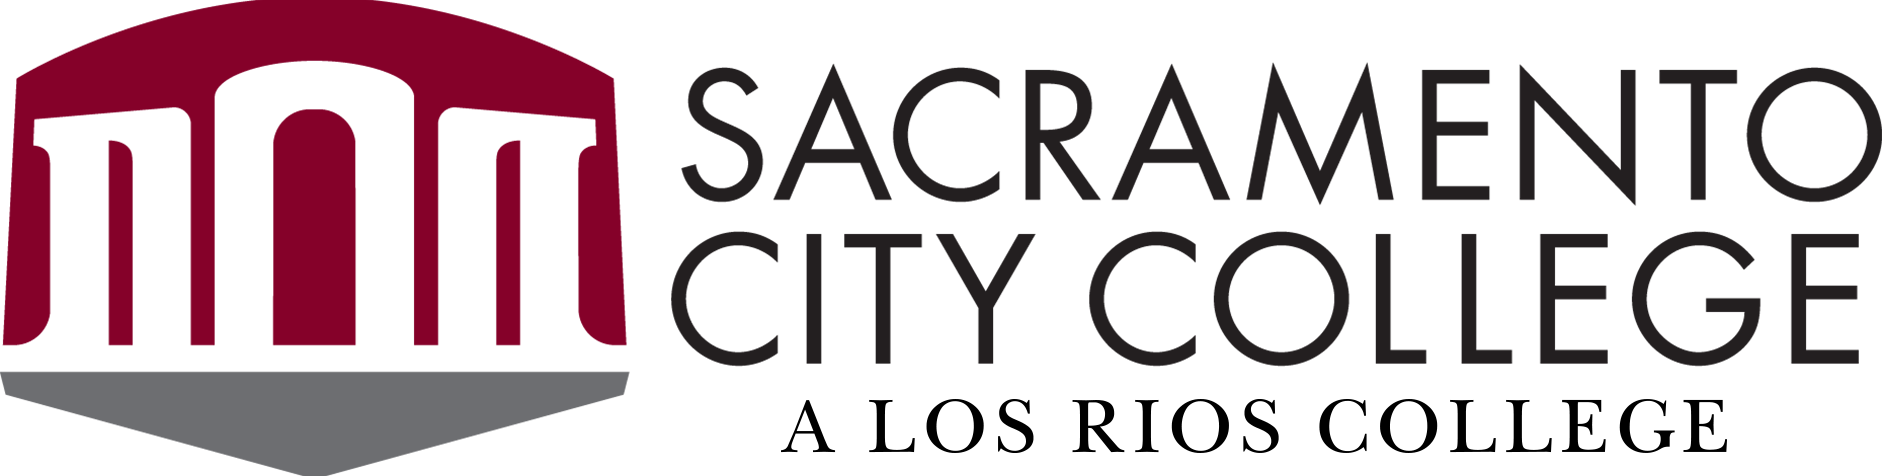 Sacramento City College logo